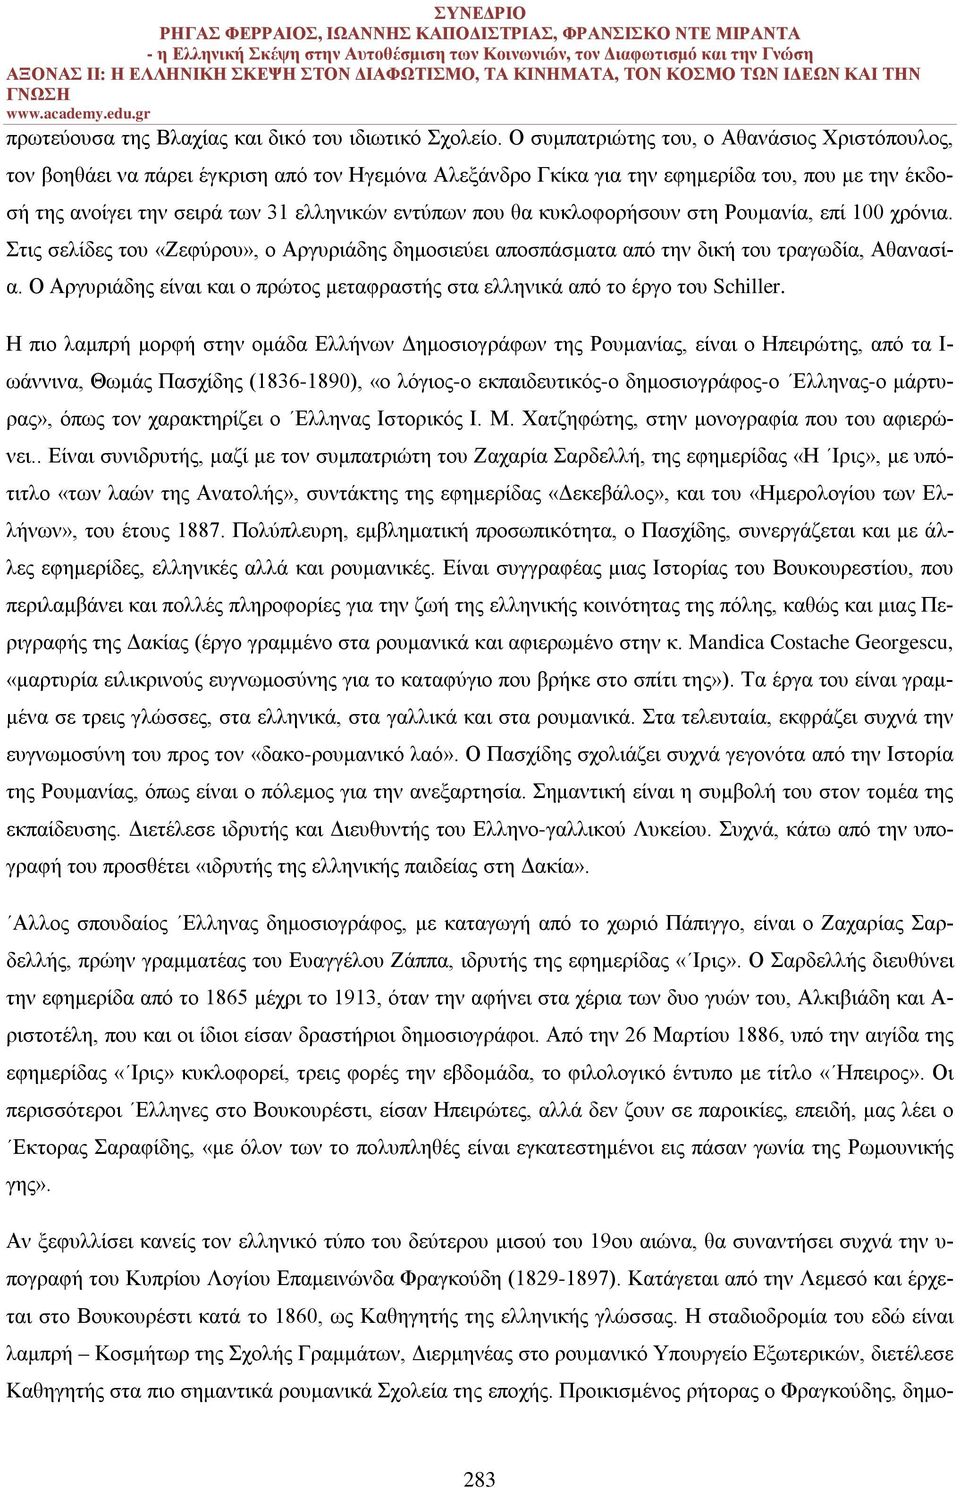 θα κυκλοφορήσουν στη Ρουμανία, επί 100 χρόνια. Στις σελίδες του «Ζεφύρου», ο Αργυριάδης δημοσιεύει αποσπάσματα από την δική του τραγωδία, Αθανασία.